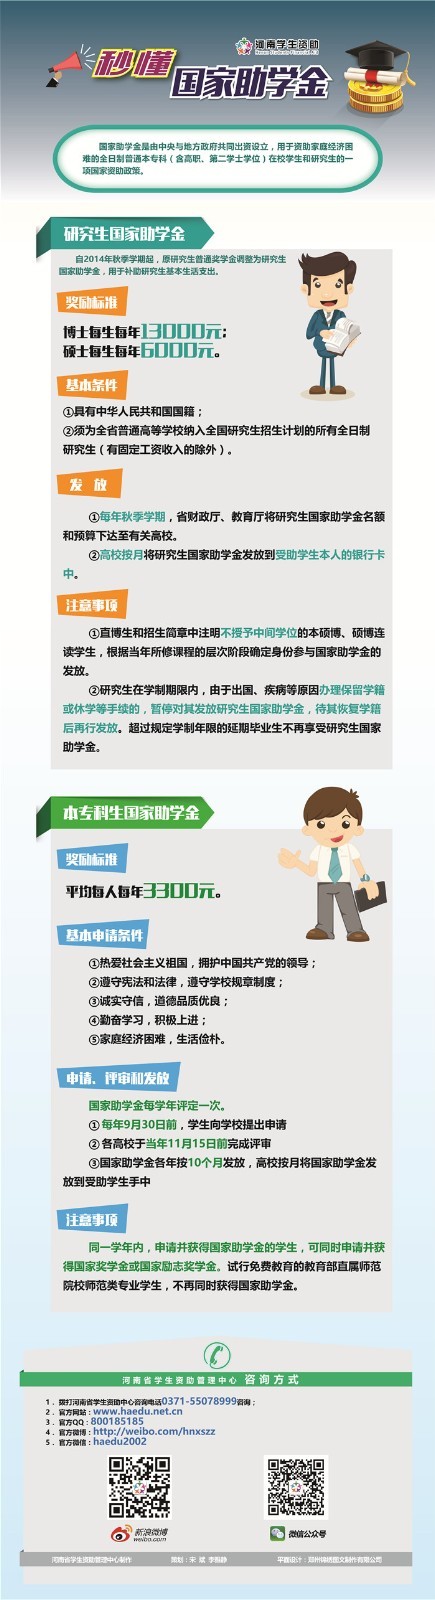 河南省家庭经济困难学生资助政策介绍